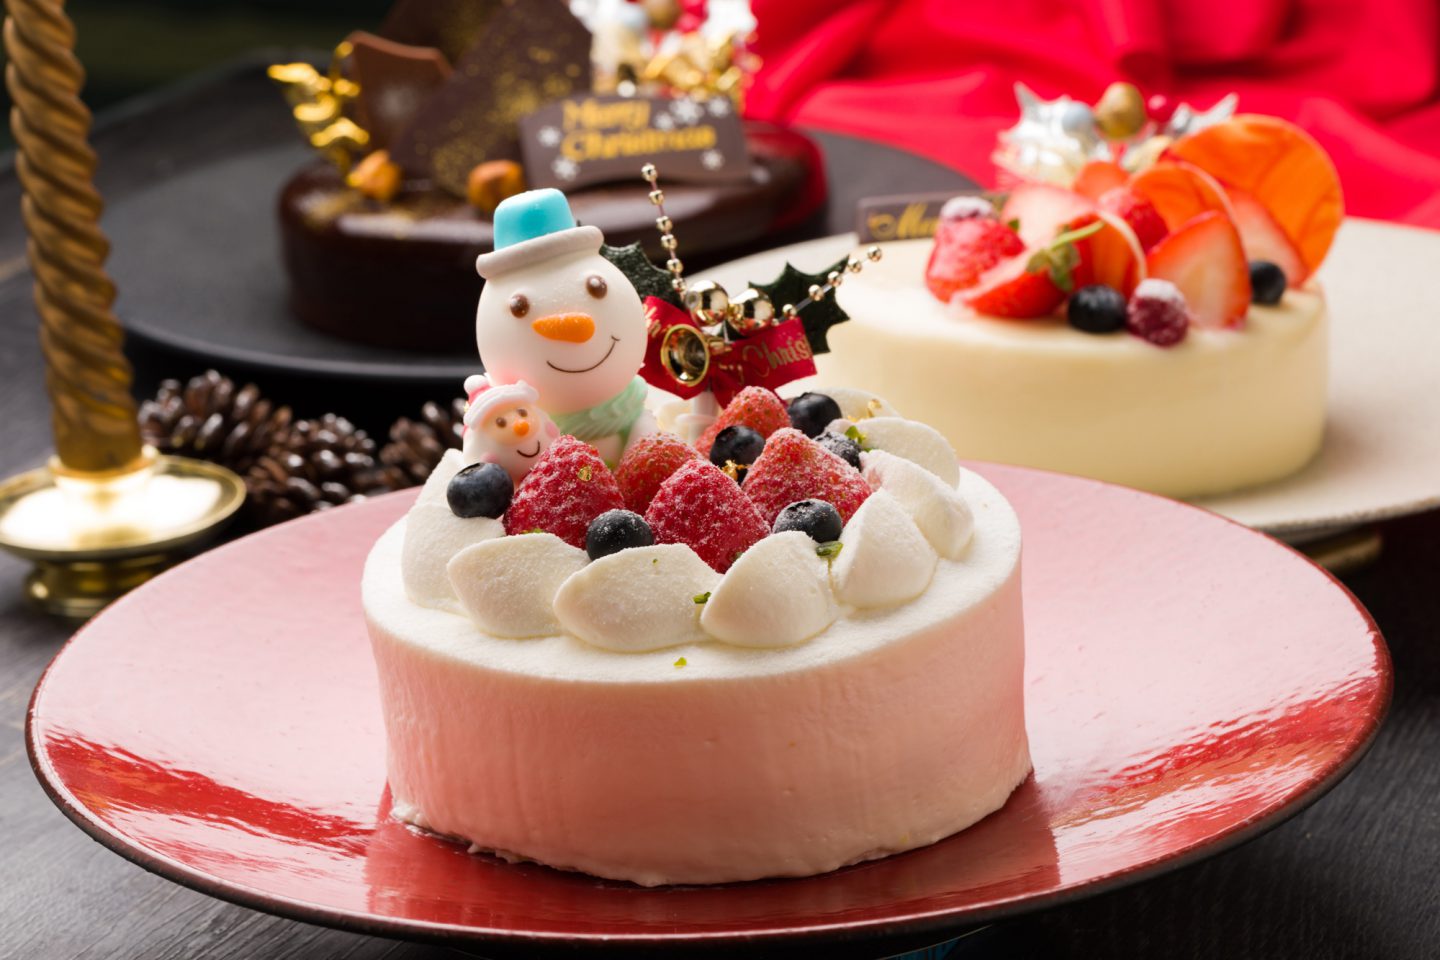 ありがとうサービス 人事ブログ1411 クリスマスケーキ予約受付中 株式会社ありがとうサービス